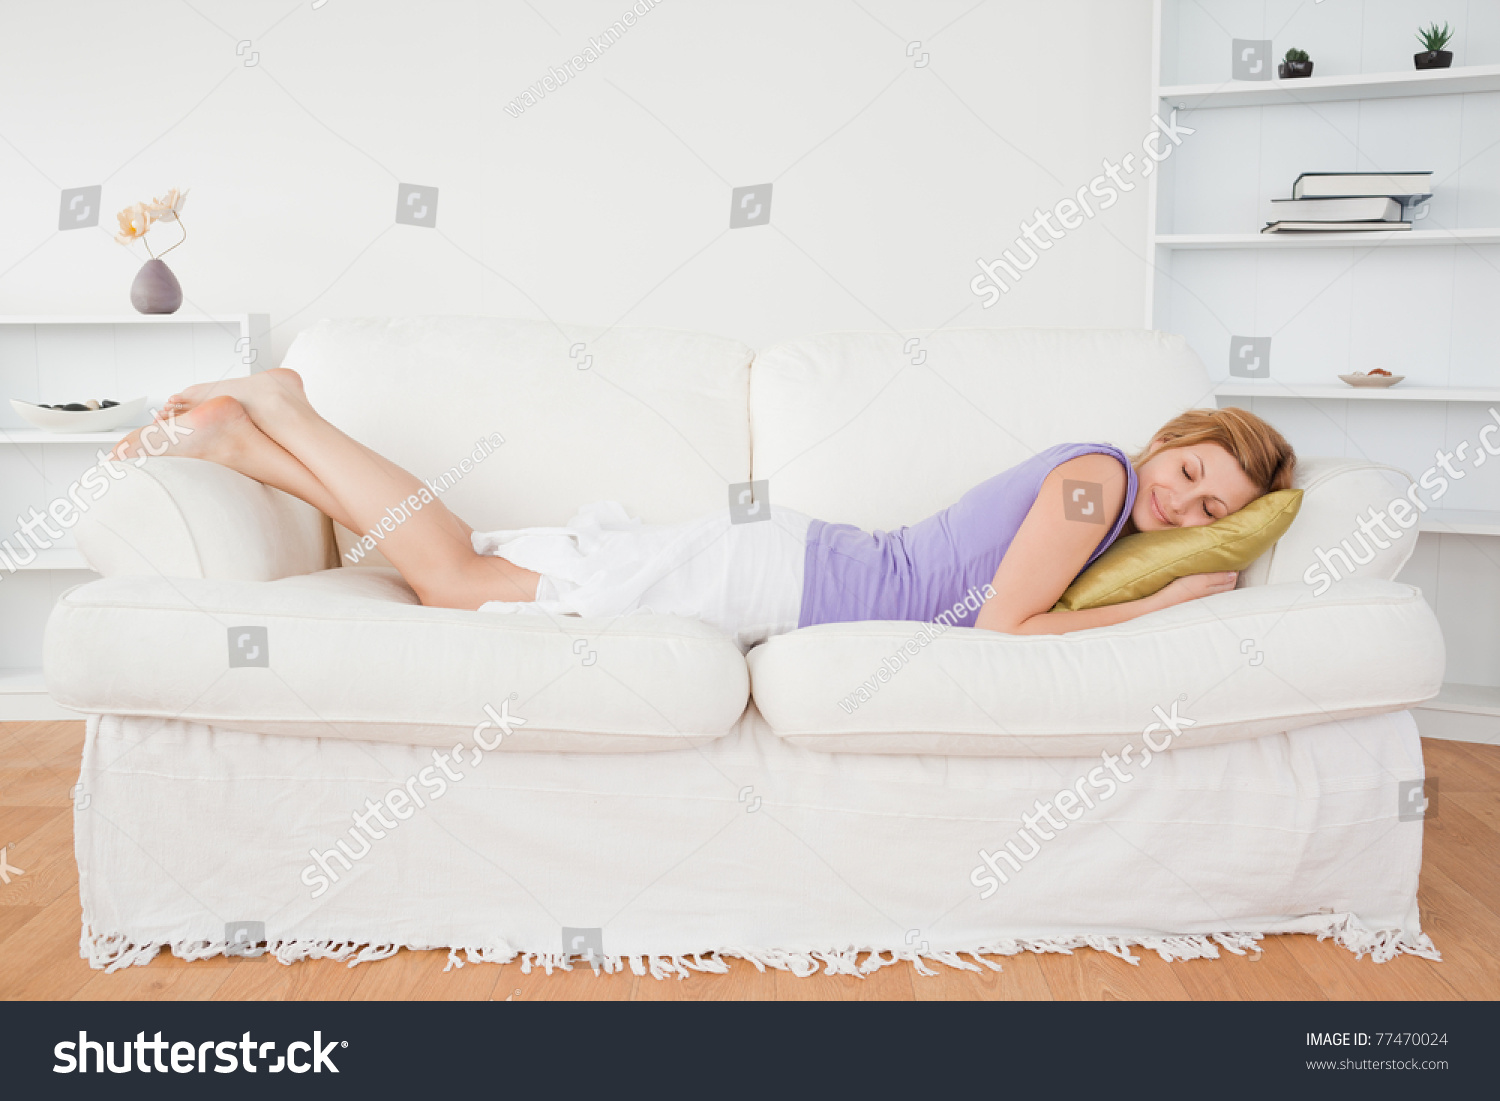 Лежали или лижали. Девушка лежит на диване отдыхает. Девушка лежит на диване на животе. Упражнения лежа на диване с телефоном.